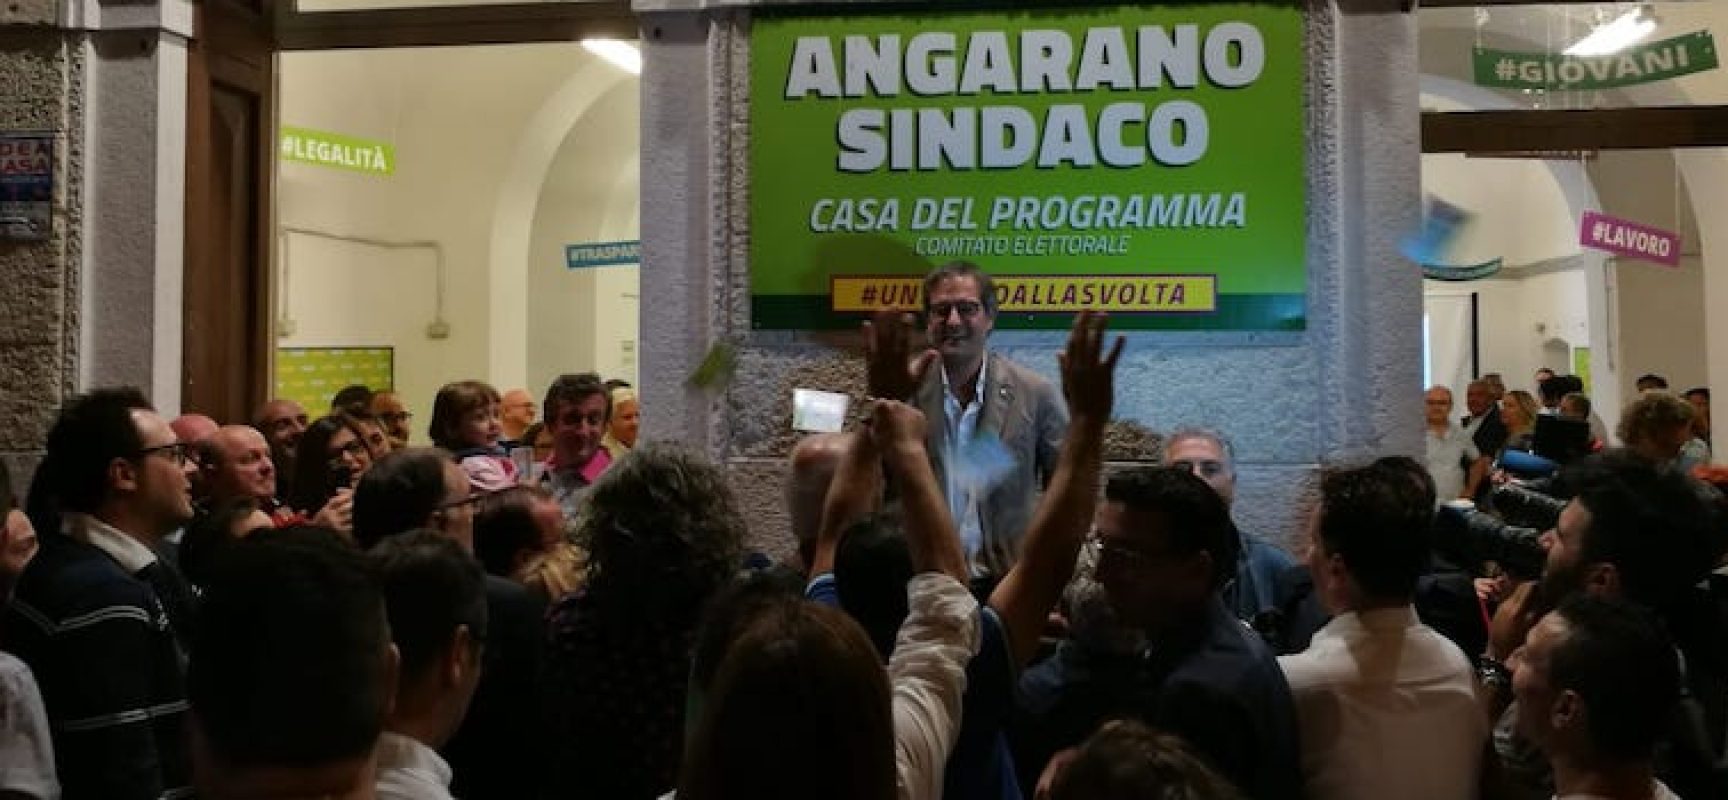 Bisceglie ha un nuovo sindaco: Angelantonio Angarano vince al ballottaggio